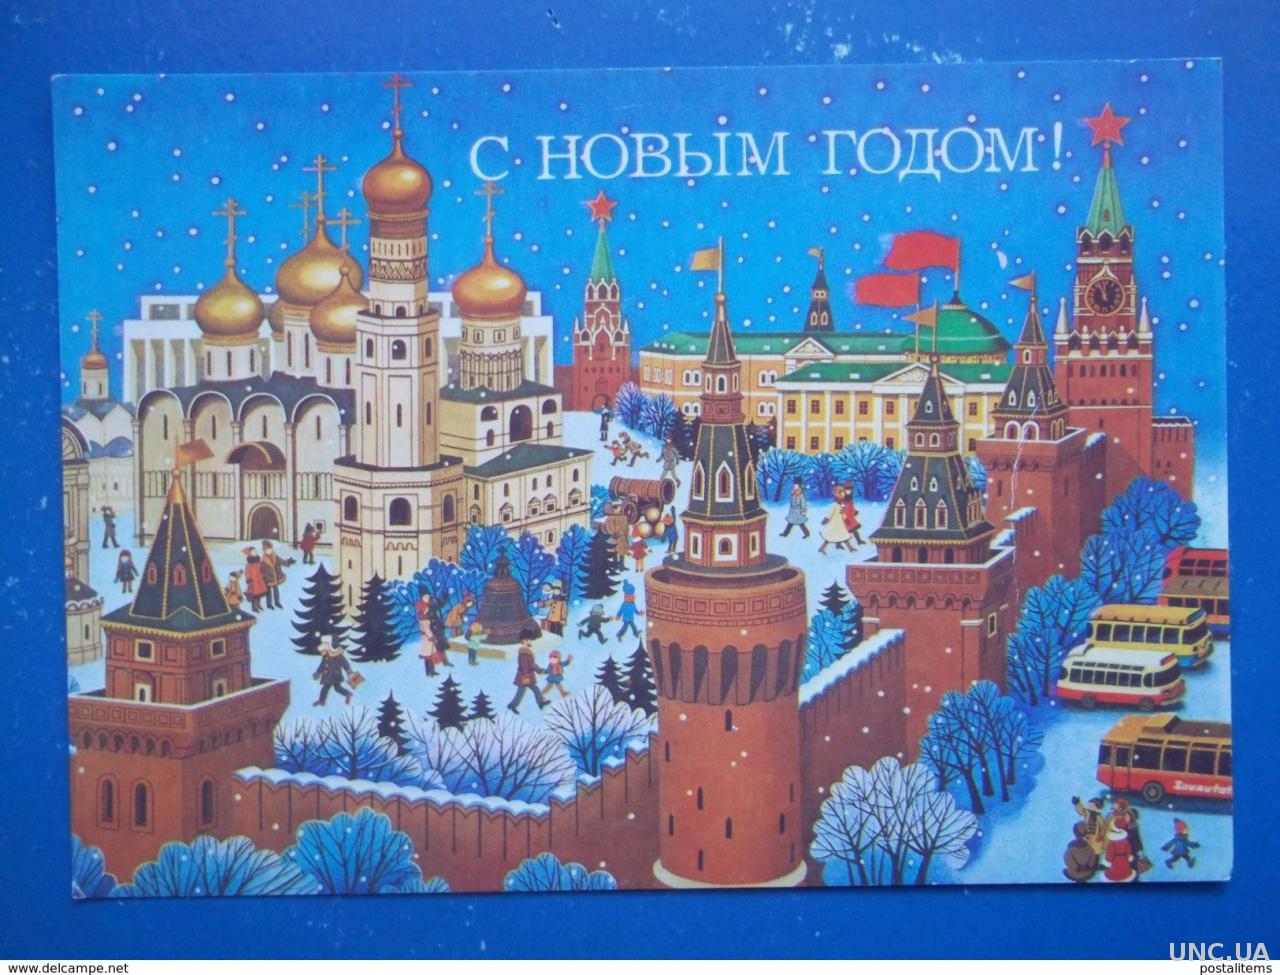 Открытка с новым годом Кремль